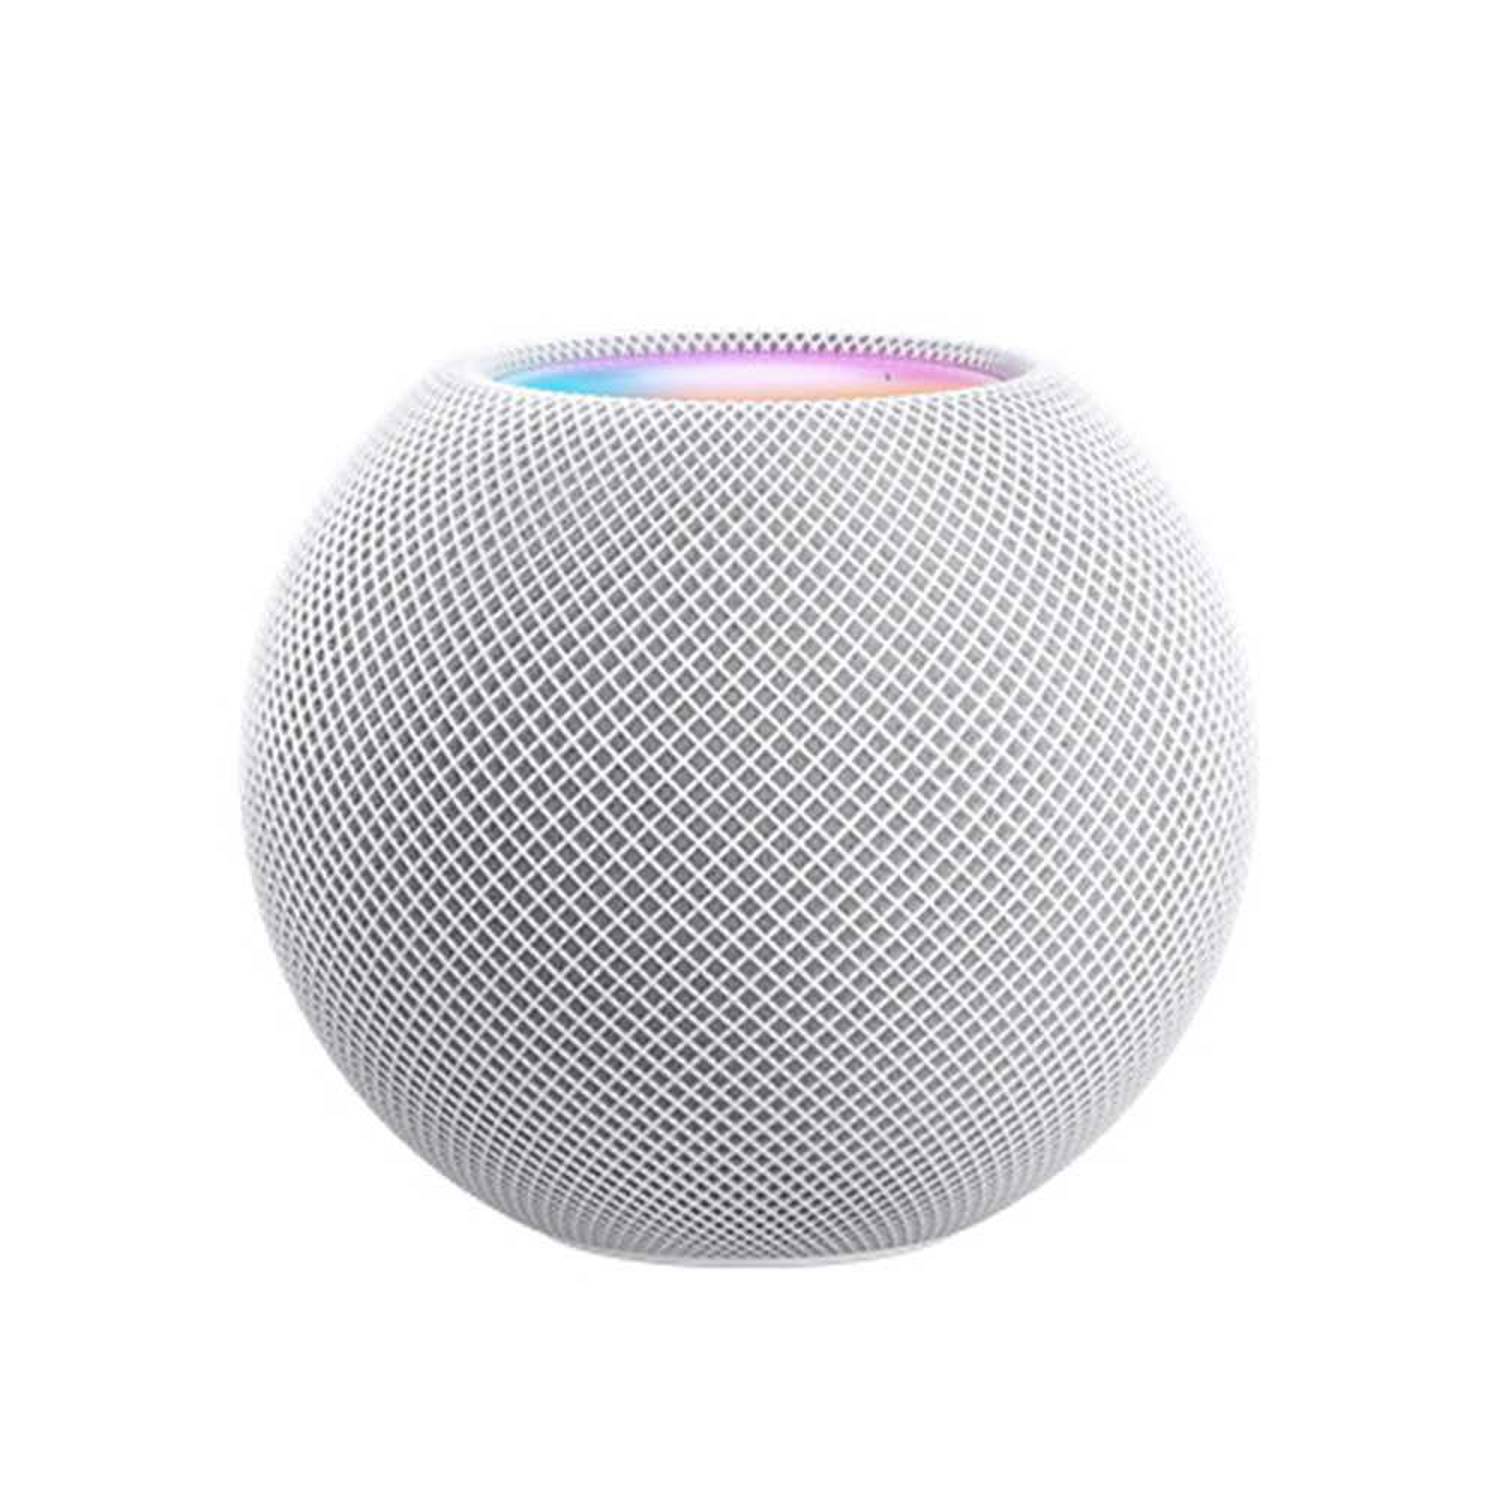 Apple HomePod mini - white smart speaker - MY5H2LL/A - Speakers 